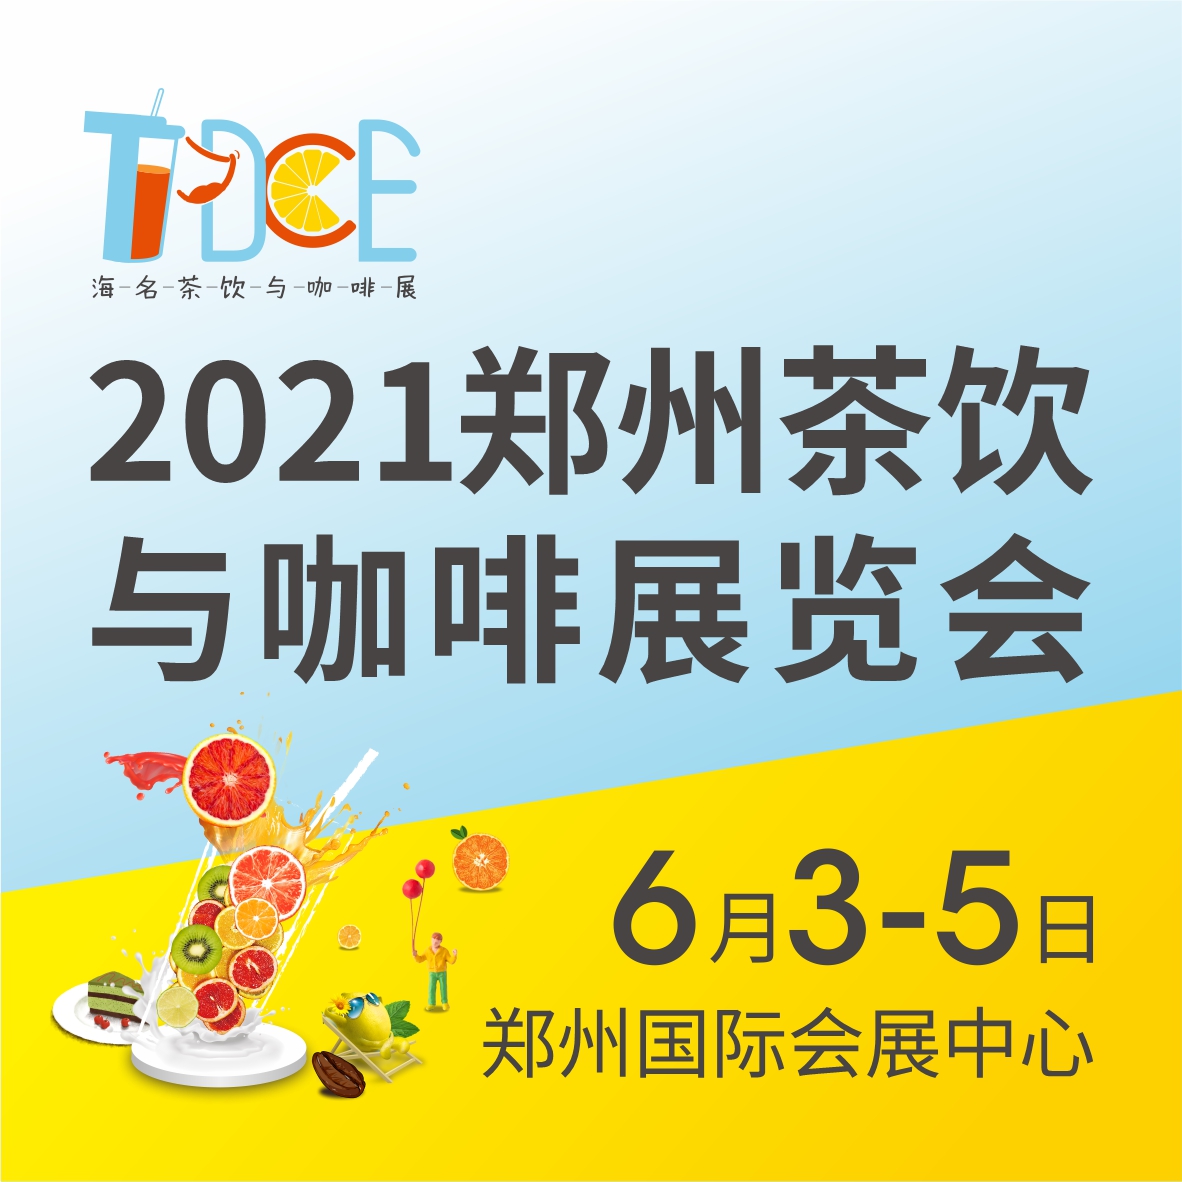 2021郑州茶饮与咖啡展览会